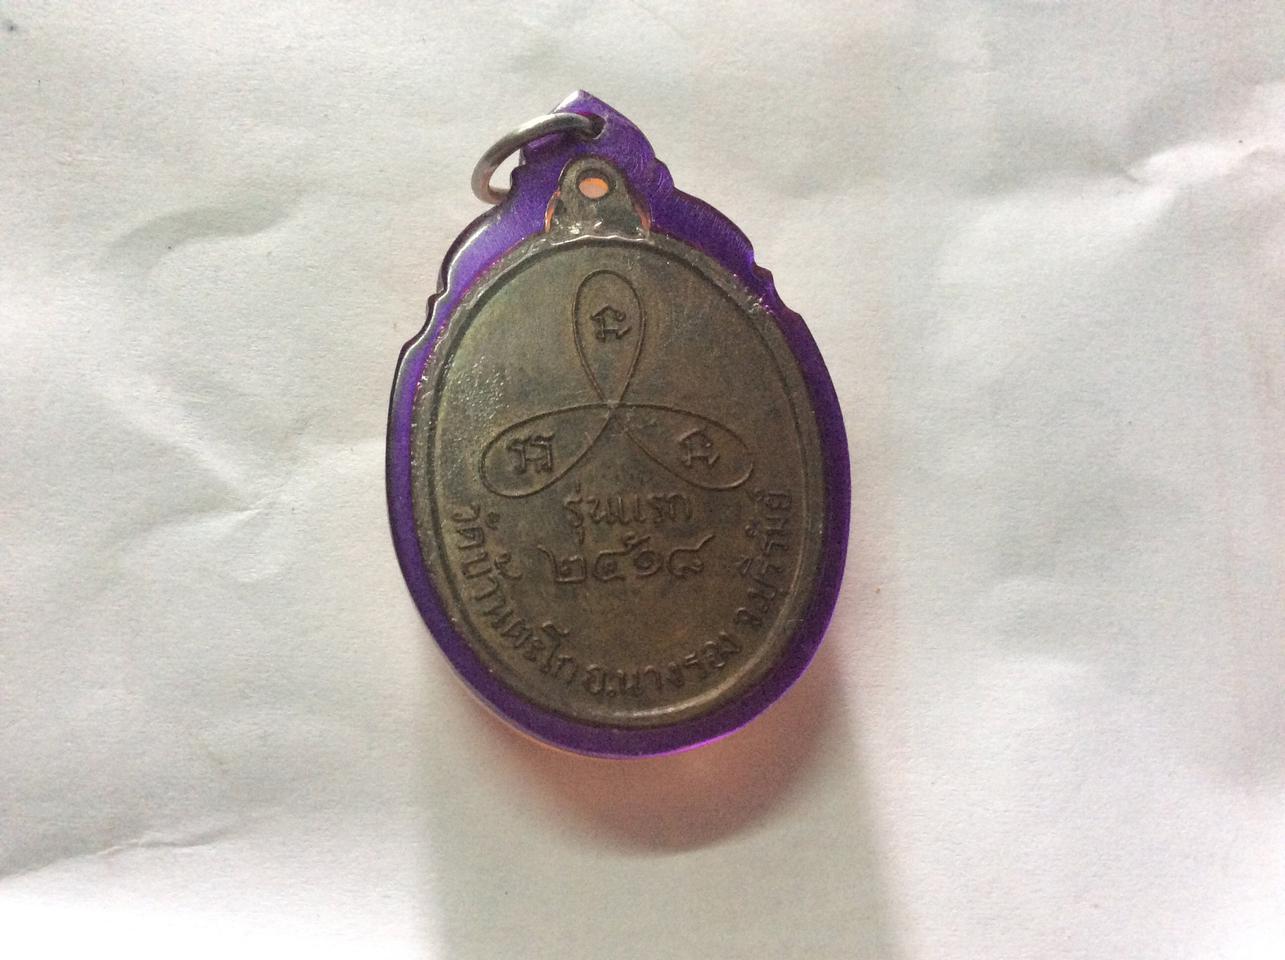 เหรียญพระอาจารย์สานนท์ วัดบ้านตะโก นางรอง บุรีรัมย์ ปี2518 รูปเล็กที่ 2